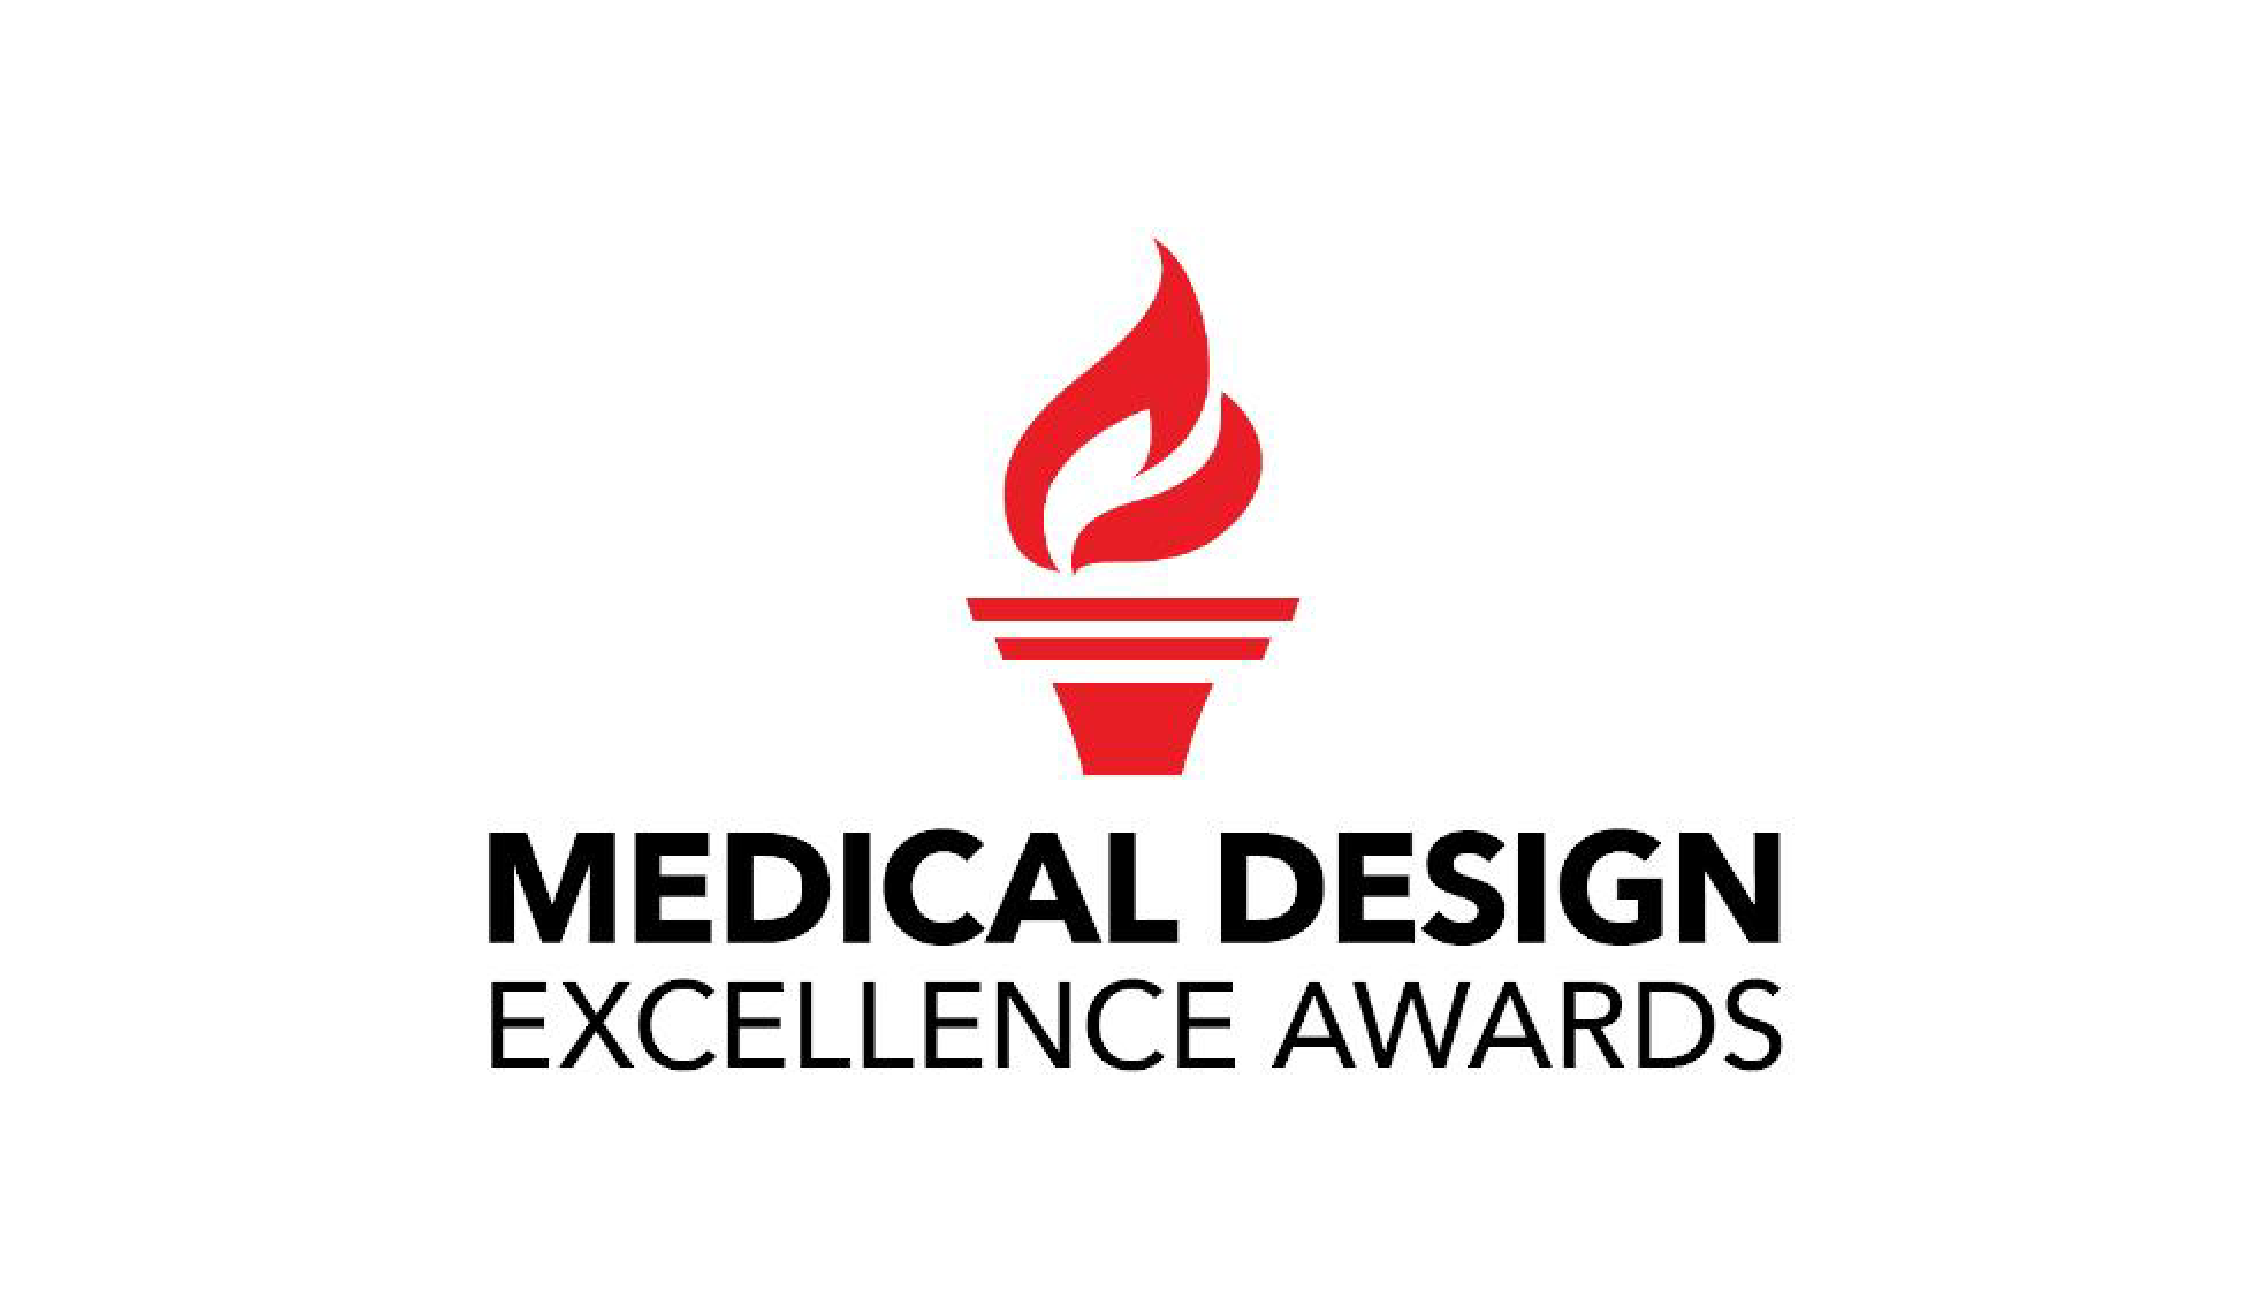 Medical Design Awards